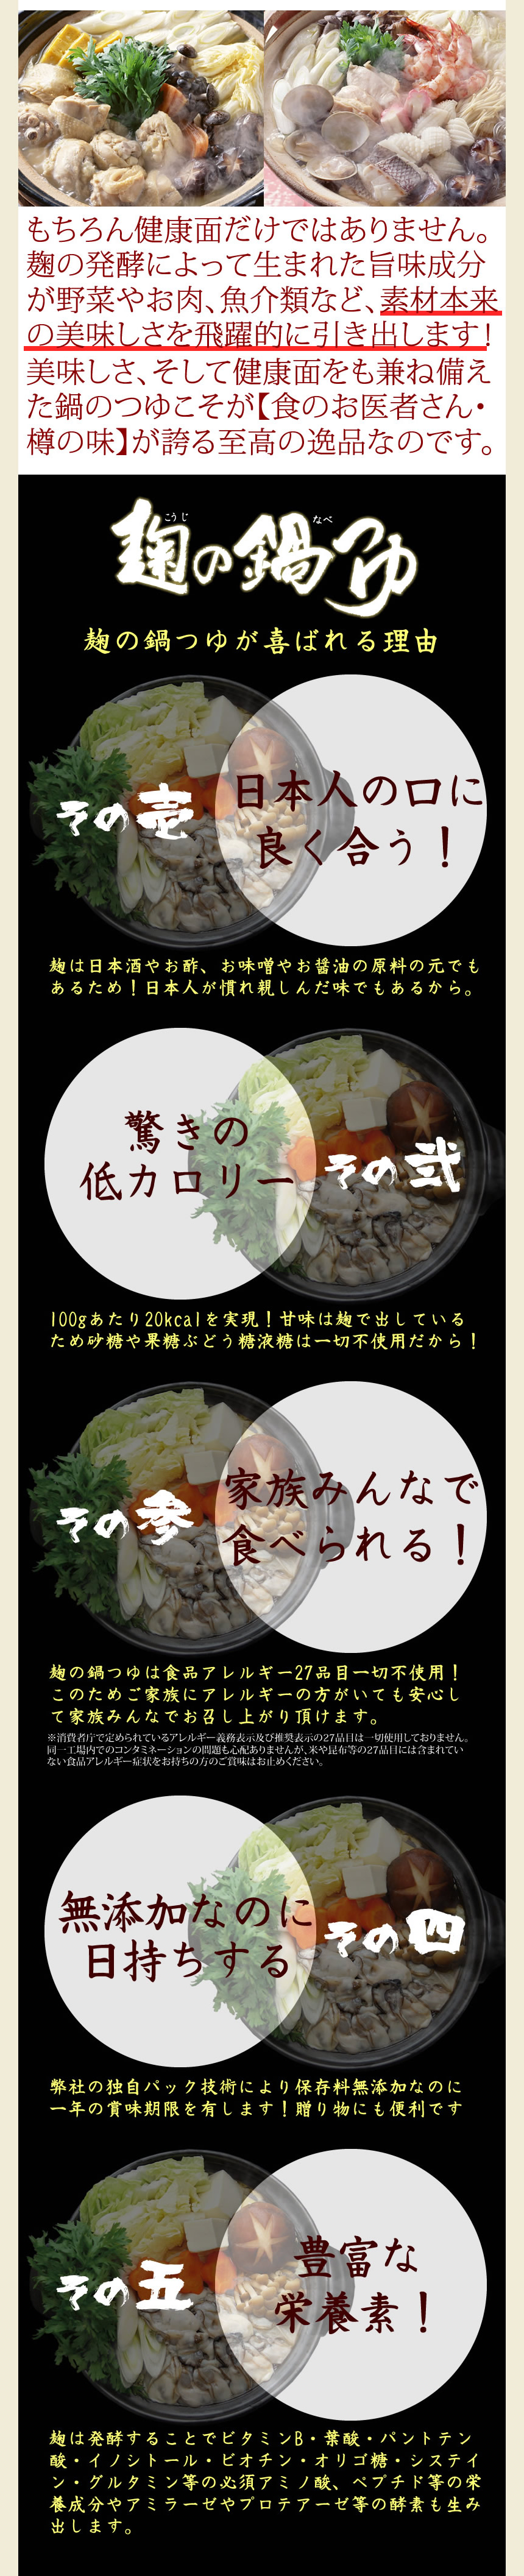 もちろん、健康面だけではありません。麹の発酵によって生まれた旨味成分が野菜やお肉、魚介類など、素材本来の美味しさを飛躍的に引き出します！美味しさ、そして健康面をも兼ね備えた鍋のつゆこそが【食のお医者さん・樽の味】が誇る至高の逸品なのです。麹の鍋つゆが喜ばれる理由。その１、日本人の口によく合う！麹は日本酒やお酢、お味噌やお醤油の原料のもとでもあるため！日本人が慣れ親しんだ味でもあるから。その２、驚きの低カロリー。１００gあたり20kcalを実現！甘味は麹で出しているため、砂糖や果糖ぶどう糖液糖は一切不使用だから！その３、家族みんなで食べられる！麹の鍋つゆは食品アレルギー２８品目一切不使用！このためご家族にアレルギーの方がいても安心して家族みんなでお召し上がりいただけます。※消費者庁で定められているアレルギー義務表示及び推奨表示２８品目は一切使用しておりません。同一工場内でのコンタミネーションの問題もご心配ありませんが、米や昆布等の２８品目には含まれていない食品アレルギー症状をお持ちの方のご賞味はおやめください。その４、無添加なのに日持ちする。弊社の独自パック技術により、保存料無添加なのに、一年の賞味期限を有します！贈り物にも便利です。その５、豊富な栄養素！麹は発酵することでビタミンＢ・葉酸・パントテン酸・イノシトール・ビオチン・オリゴ糖・システイン・グルタミン等の必須アミノ酸、ペプチド等の栄養成分やアミラーゼやプロテアーゼ等の酵素も生み出します。